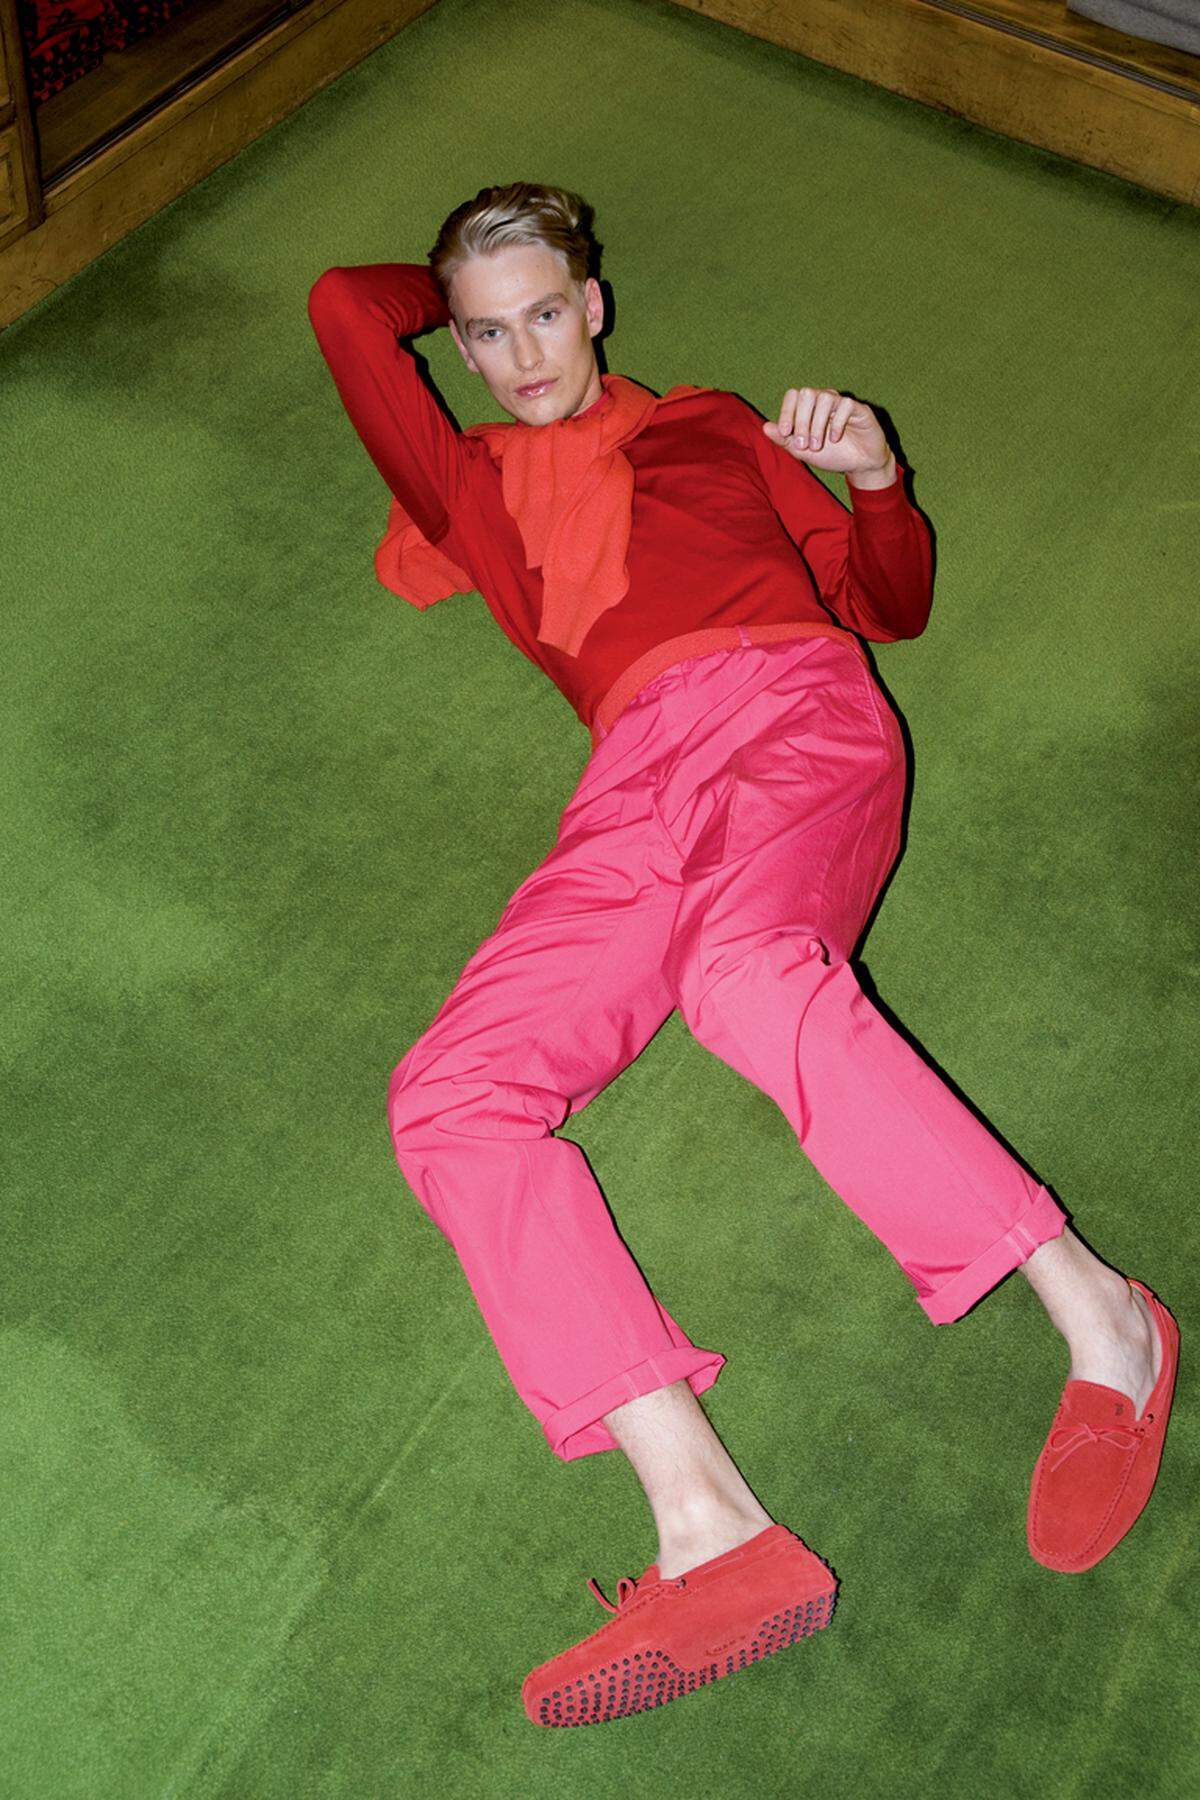 2009 fotografierte Elfie Semotan diese Modestrecke in der Niederlassung des Herrenausstatters Knize am Graben. Die traditionsreiche Umgebung sollte durch untypisch bunte Outfits gebrochen werden.